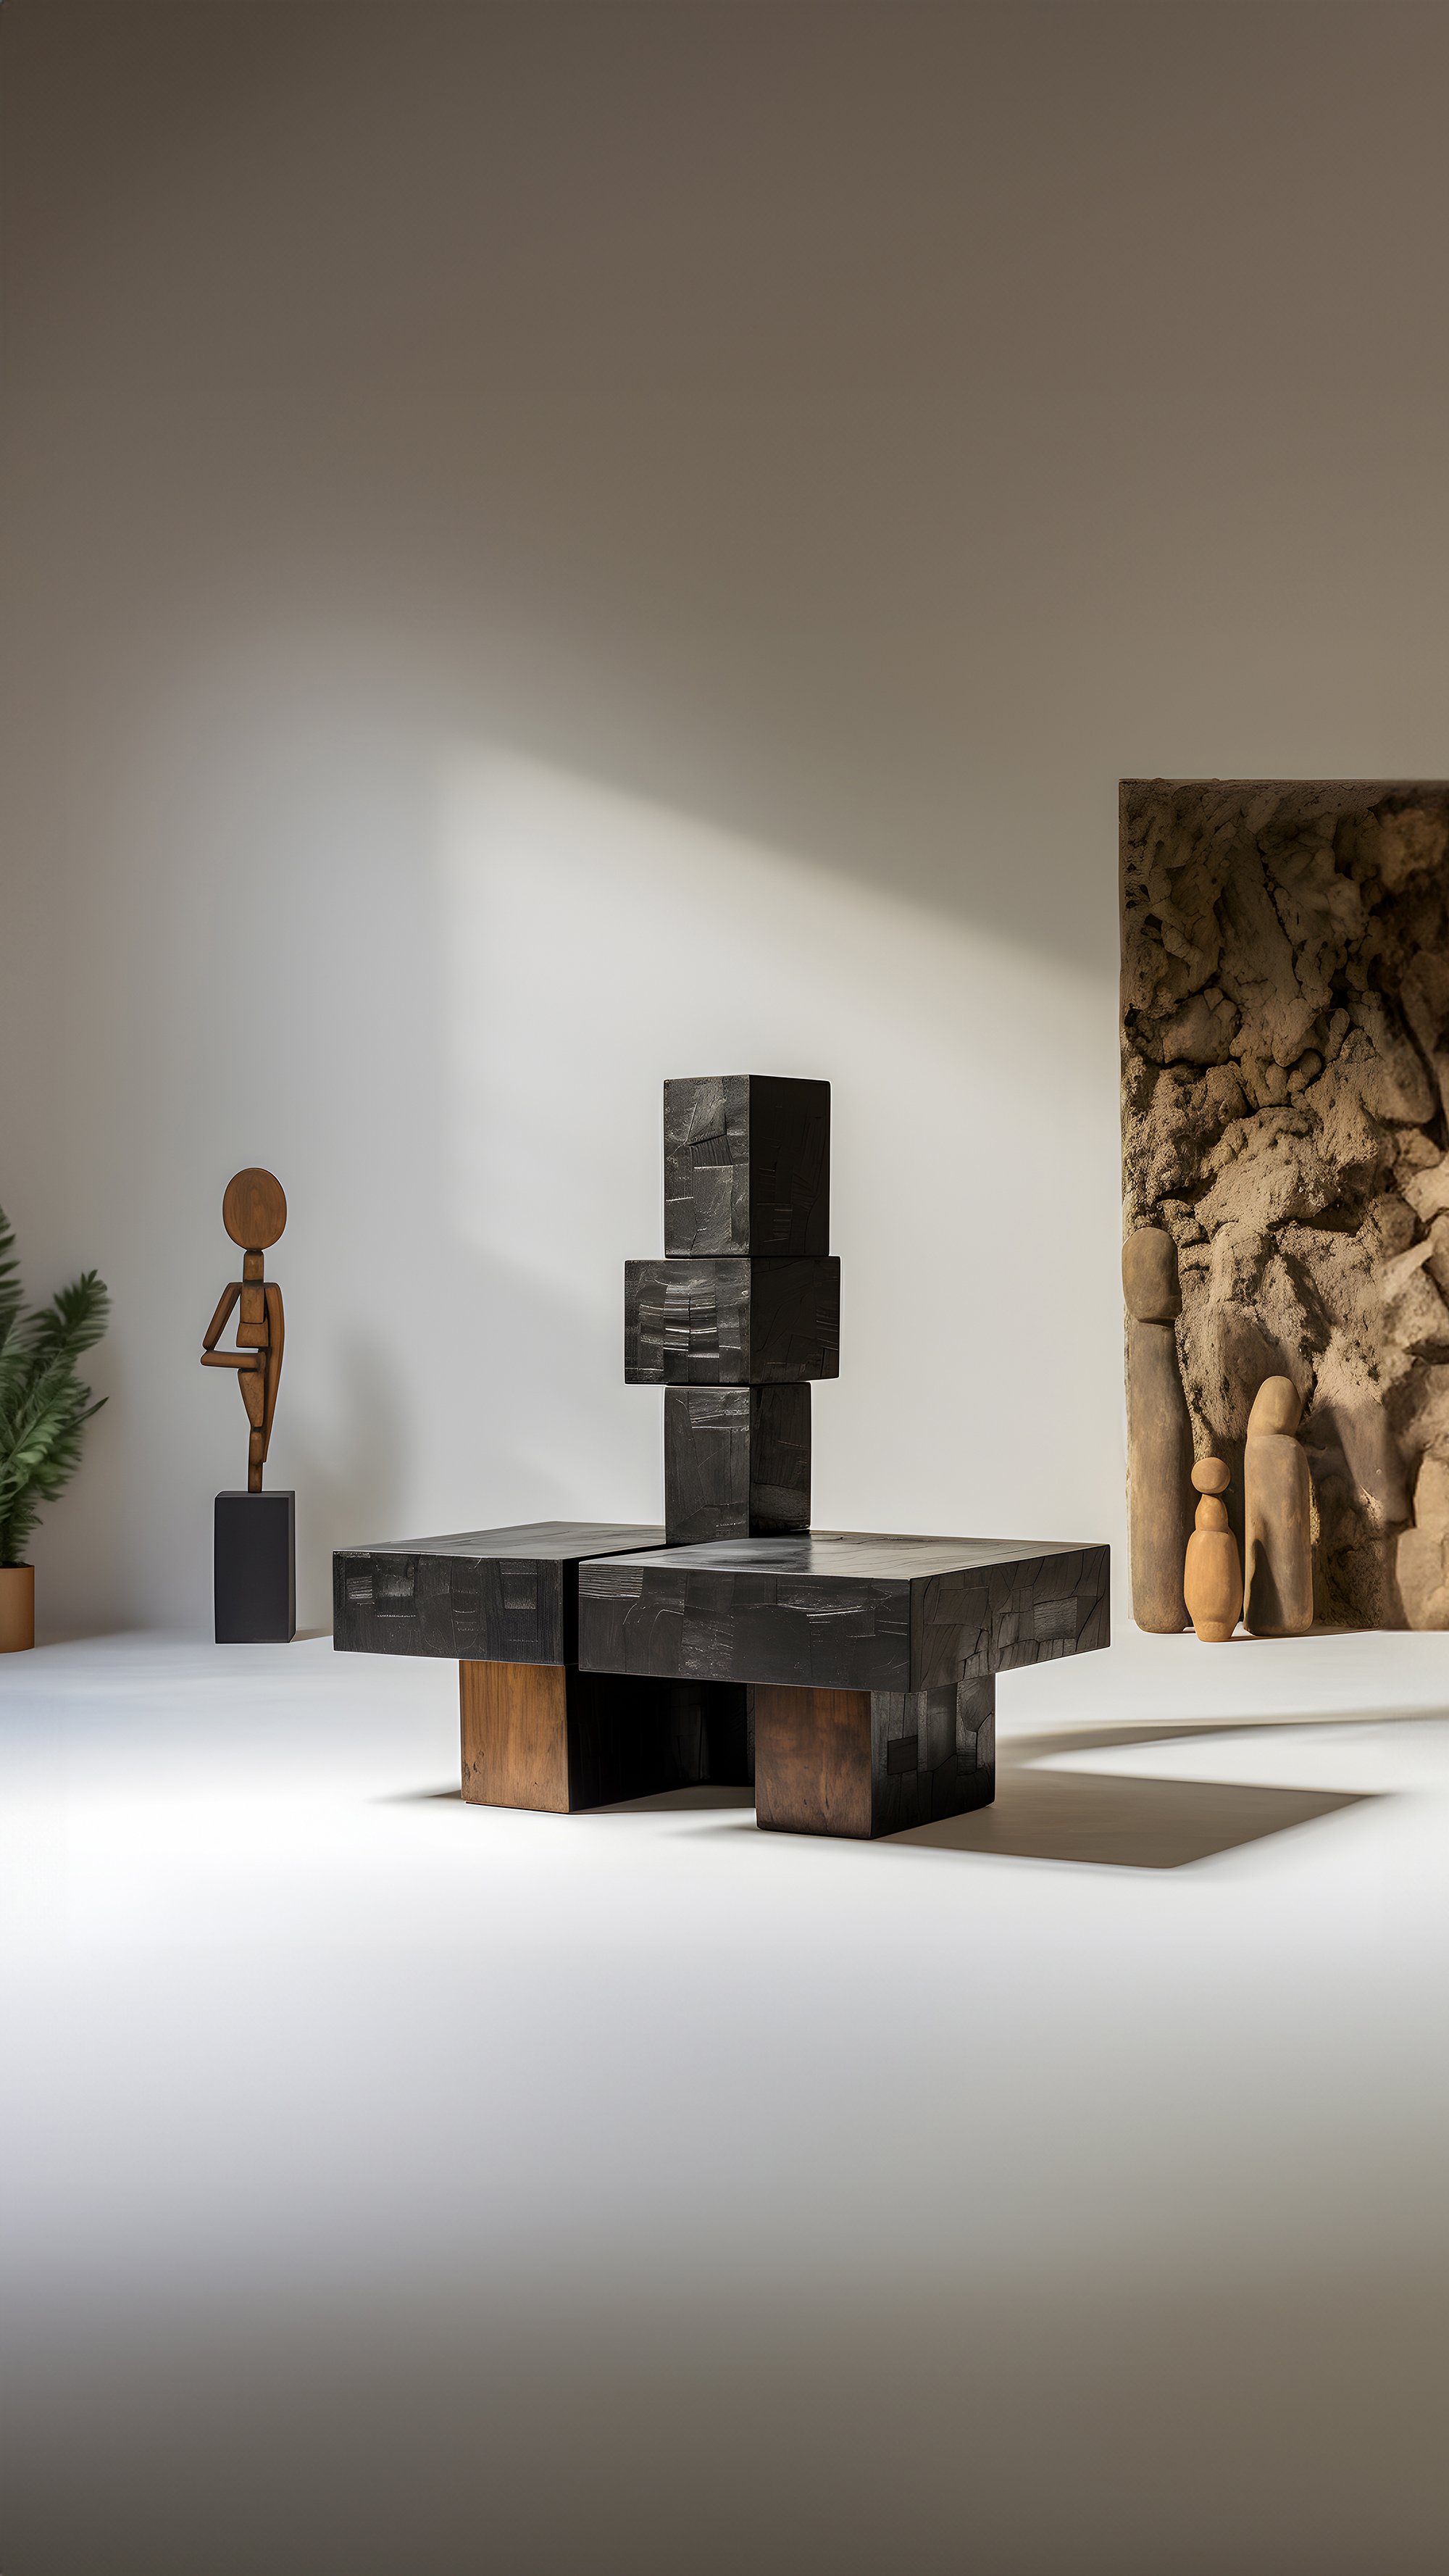 Gallery-Style Unseen Force 65 Solid Oak Table by Joel Escalona, Luxe Decor - 5.jpg